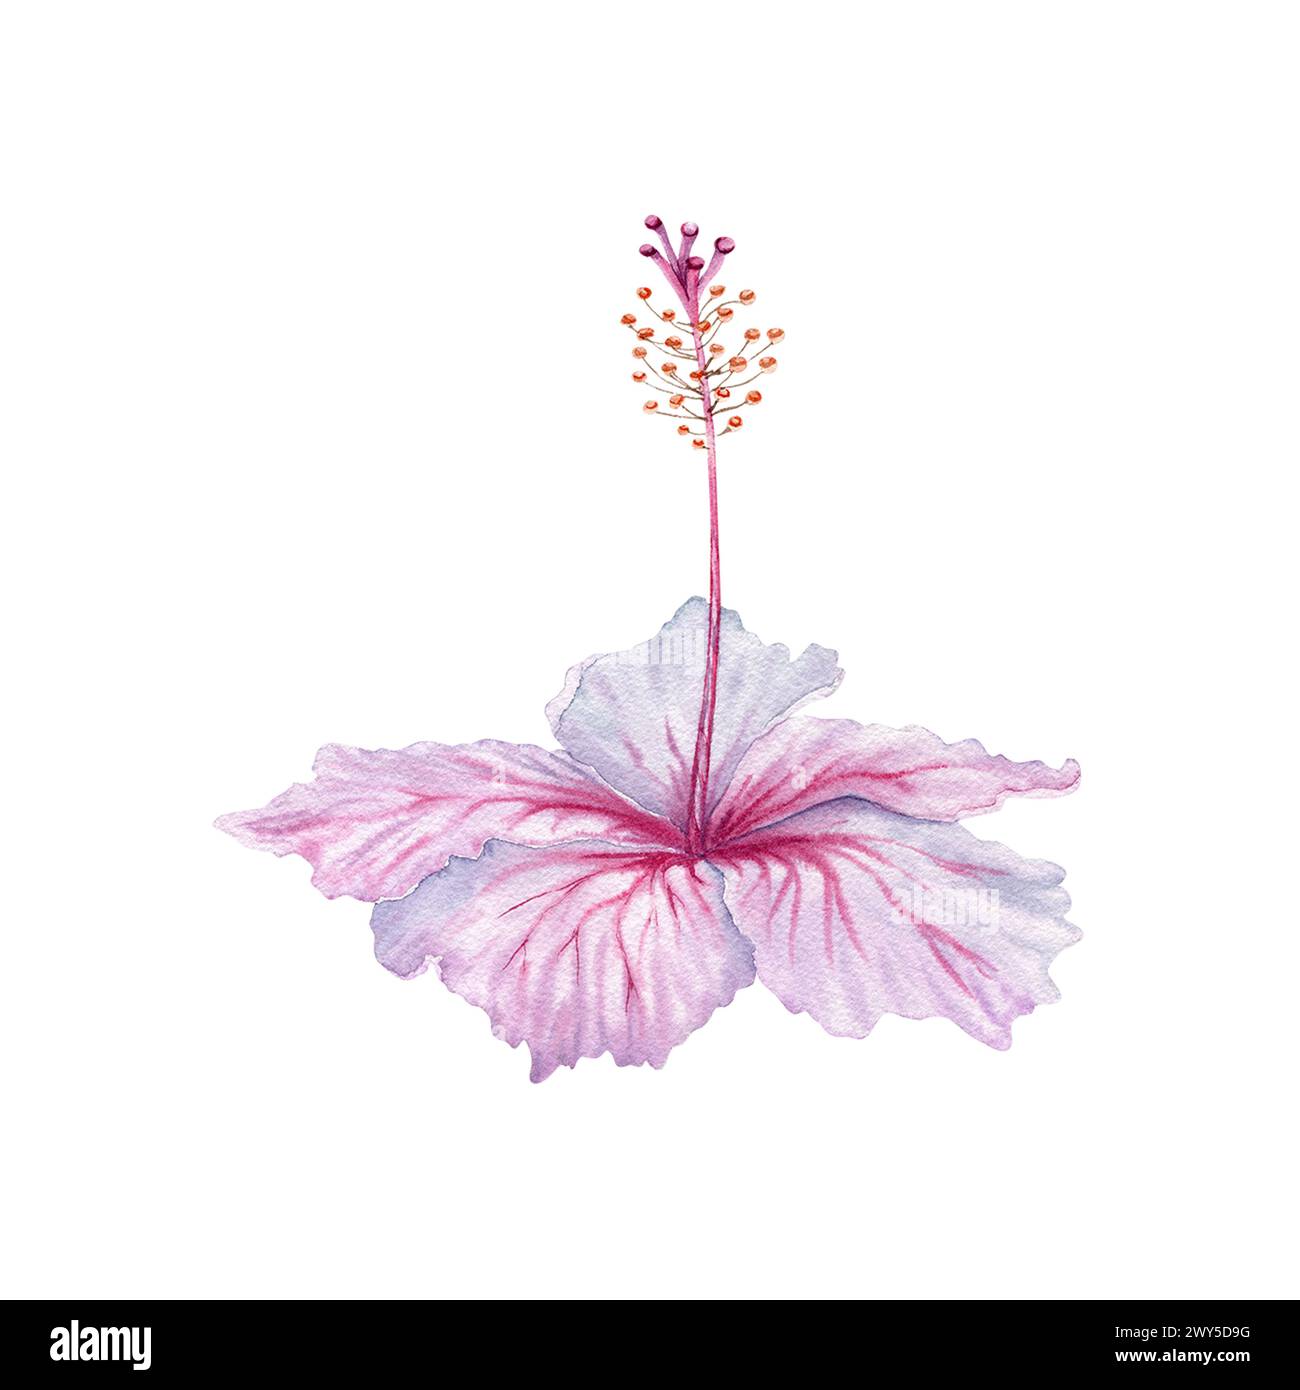 Aquarellrosa und weiße Hibiskusblüte. Handgemalte Blüte isoliert auf weißem Hintergrund. Realistisch zartes florales Element. Hibiskus-Tee, Sirup, Stockfoto